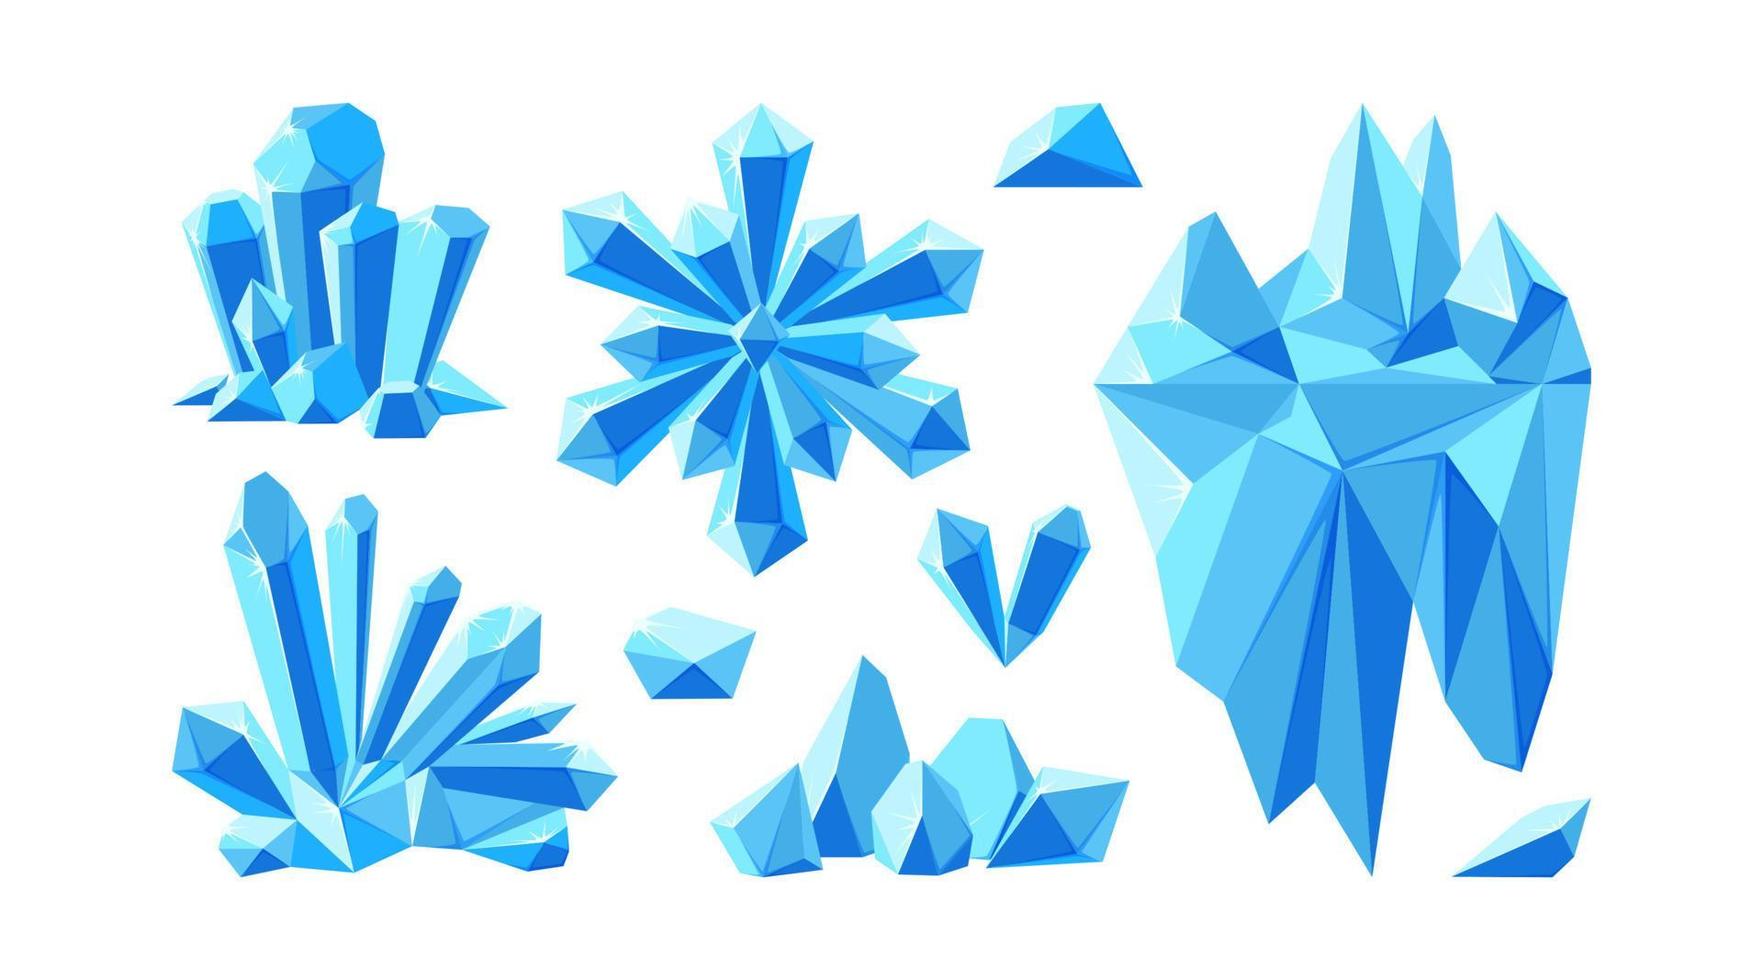 iceberg com cristais e floco de neve para paisagens árticas. conjunto de gemas de cristal e pedras para design de jogos. ilustração vetorial vetor